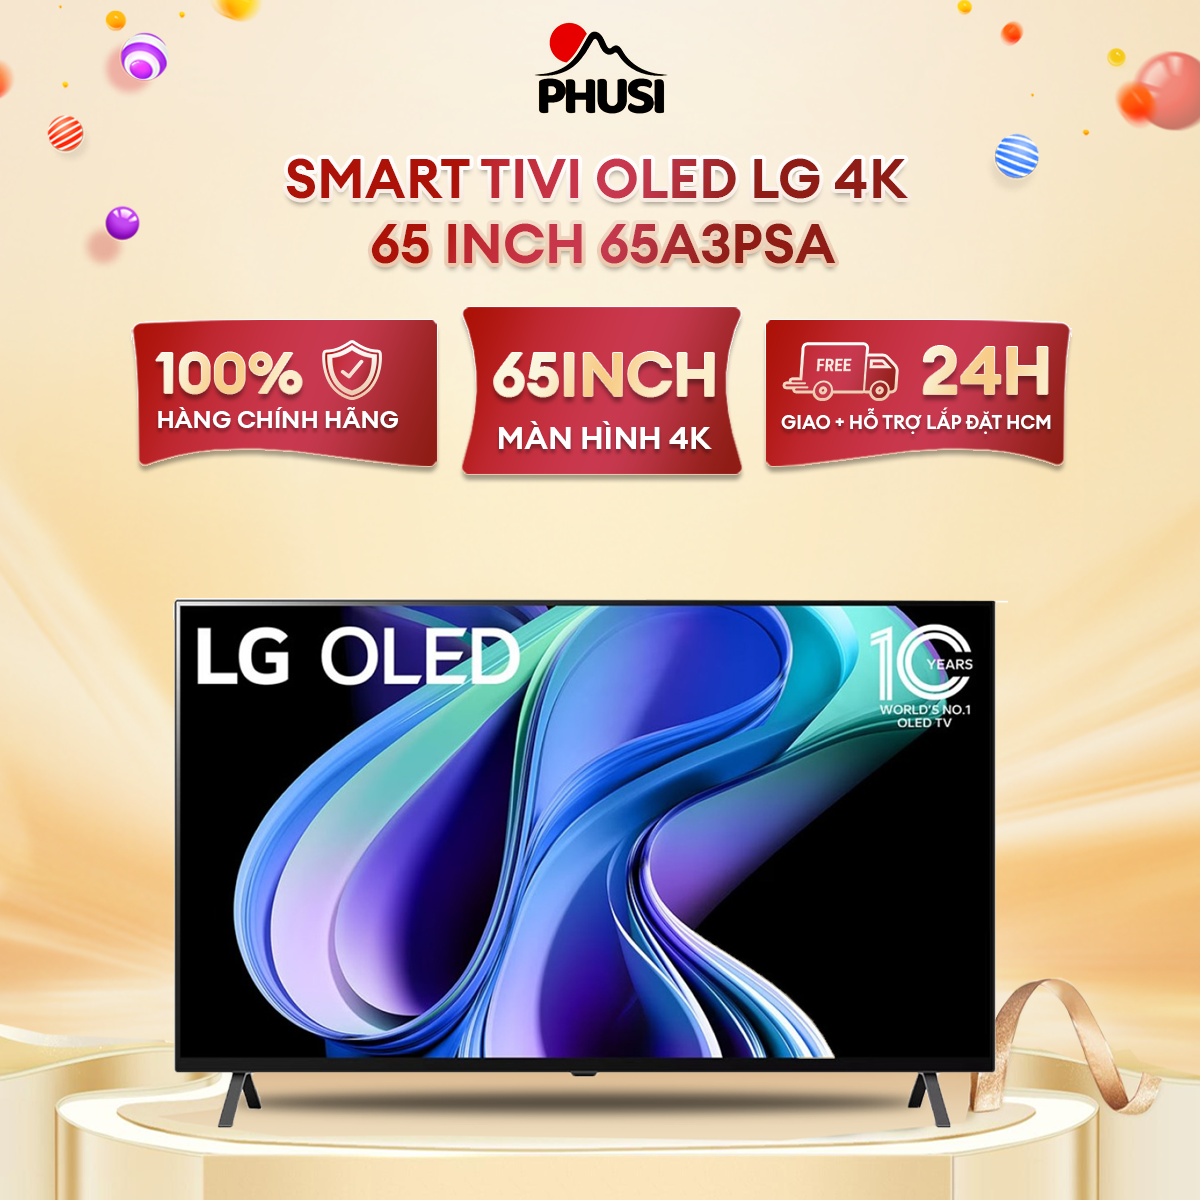 [Trả góp 0%] Smart Tivi LG OLED 4K 65 inch 65A3PSA - Miễn phí vận chuyển HCM - Tìm kiếm giọng nói trên YouTube bằng tiếng Việt Ứng dụng LG TV Plus